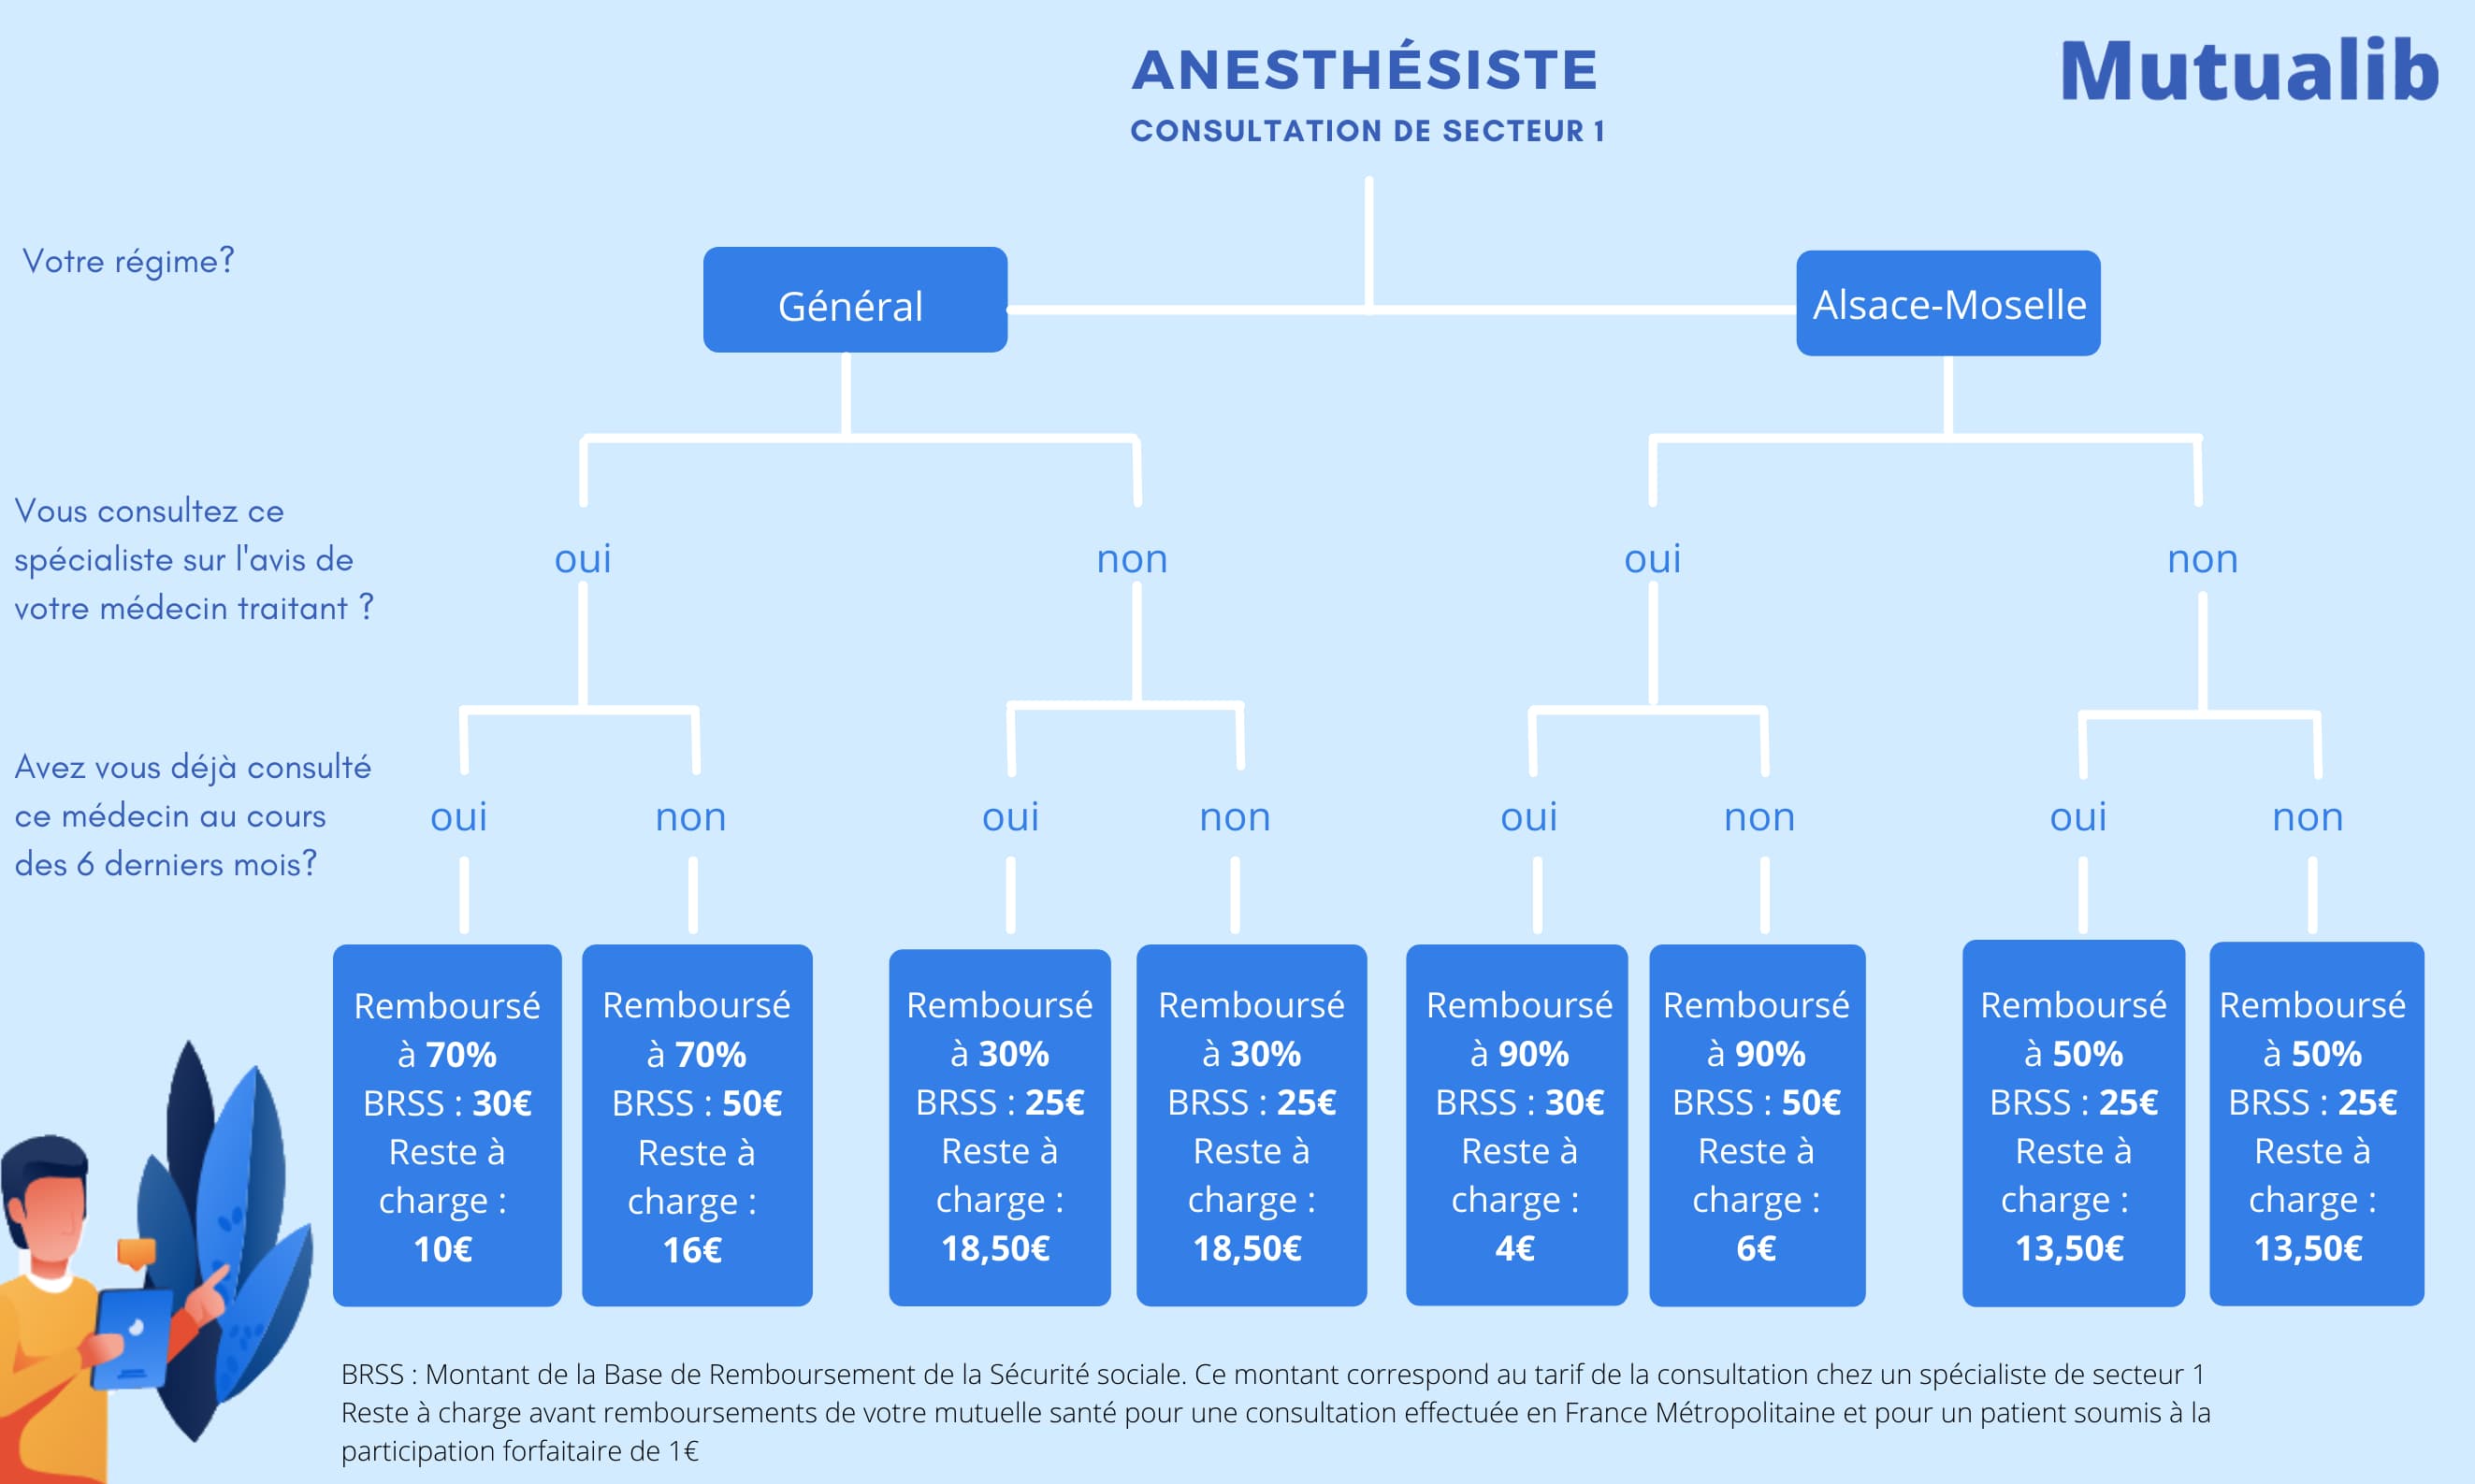 Remboursement consultation chez un anesthésiste